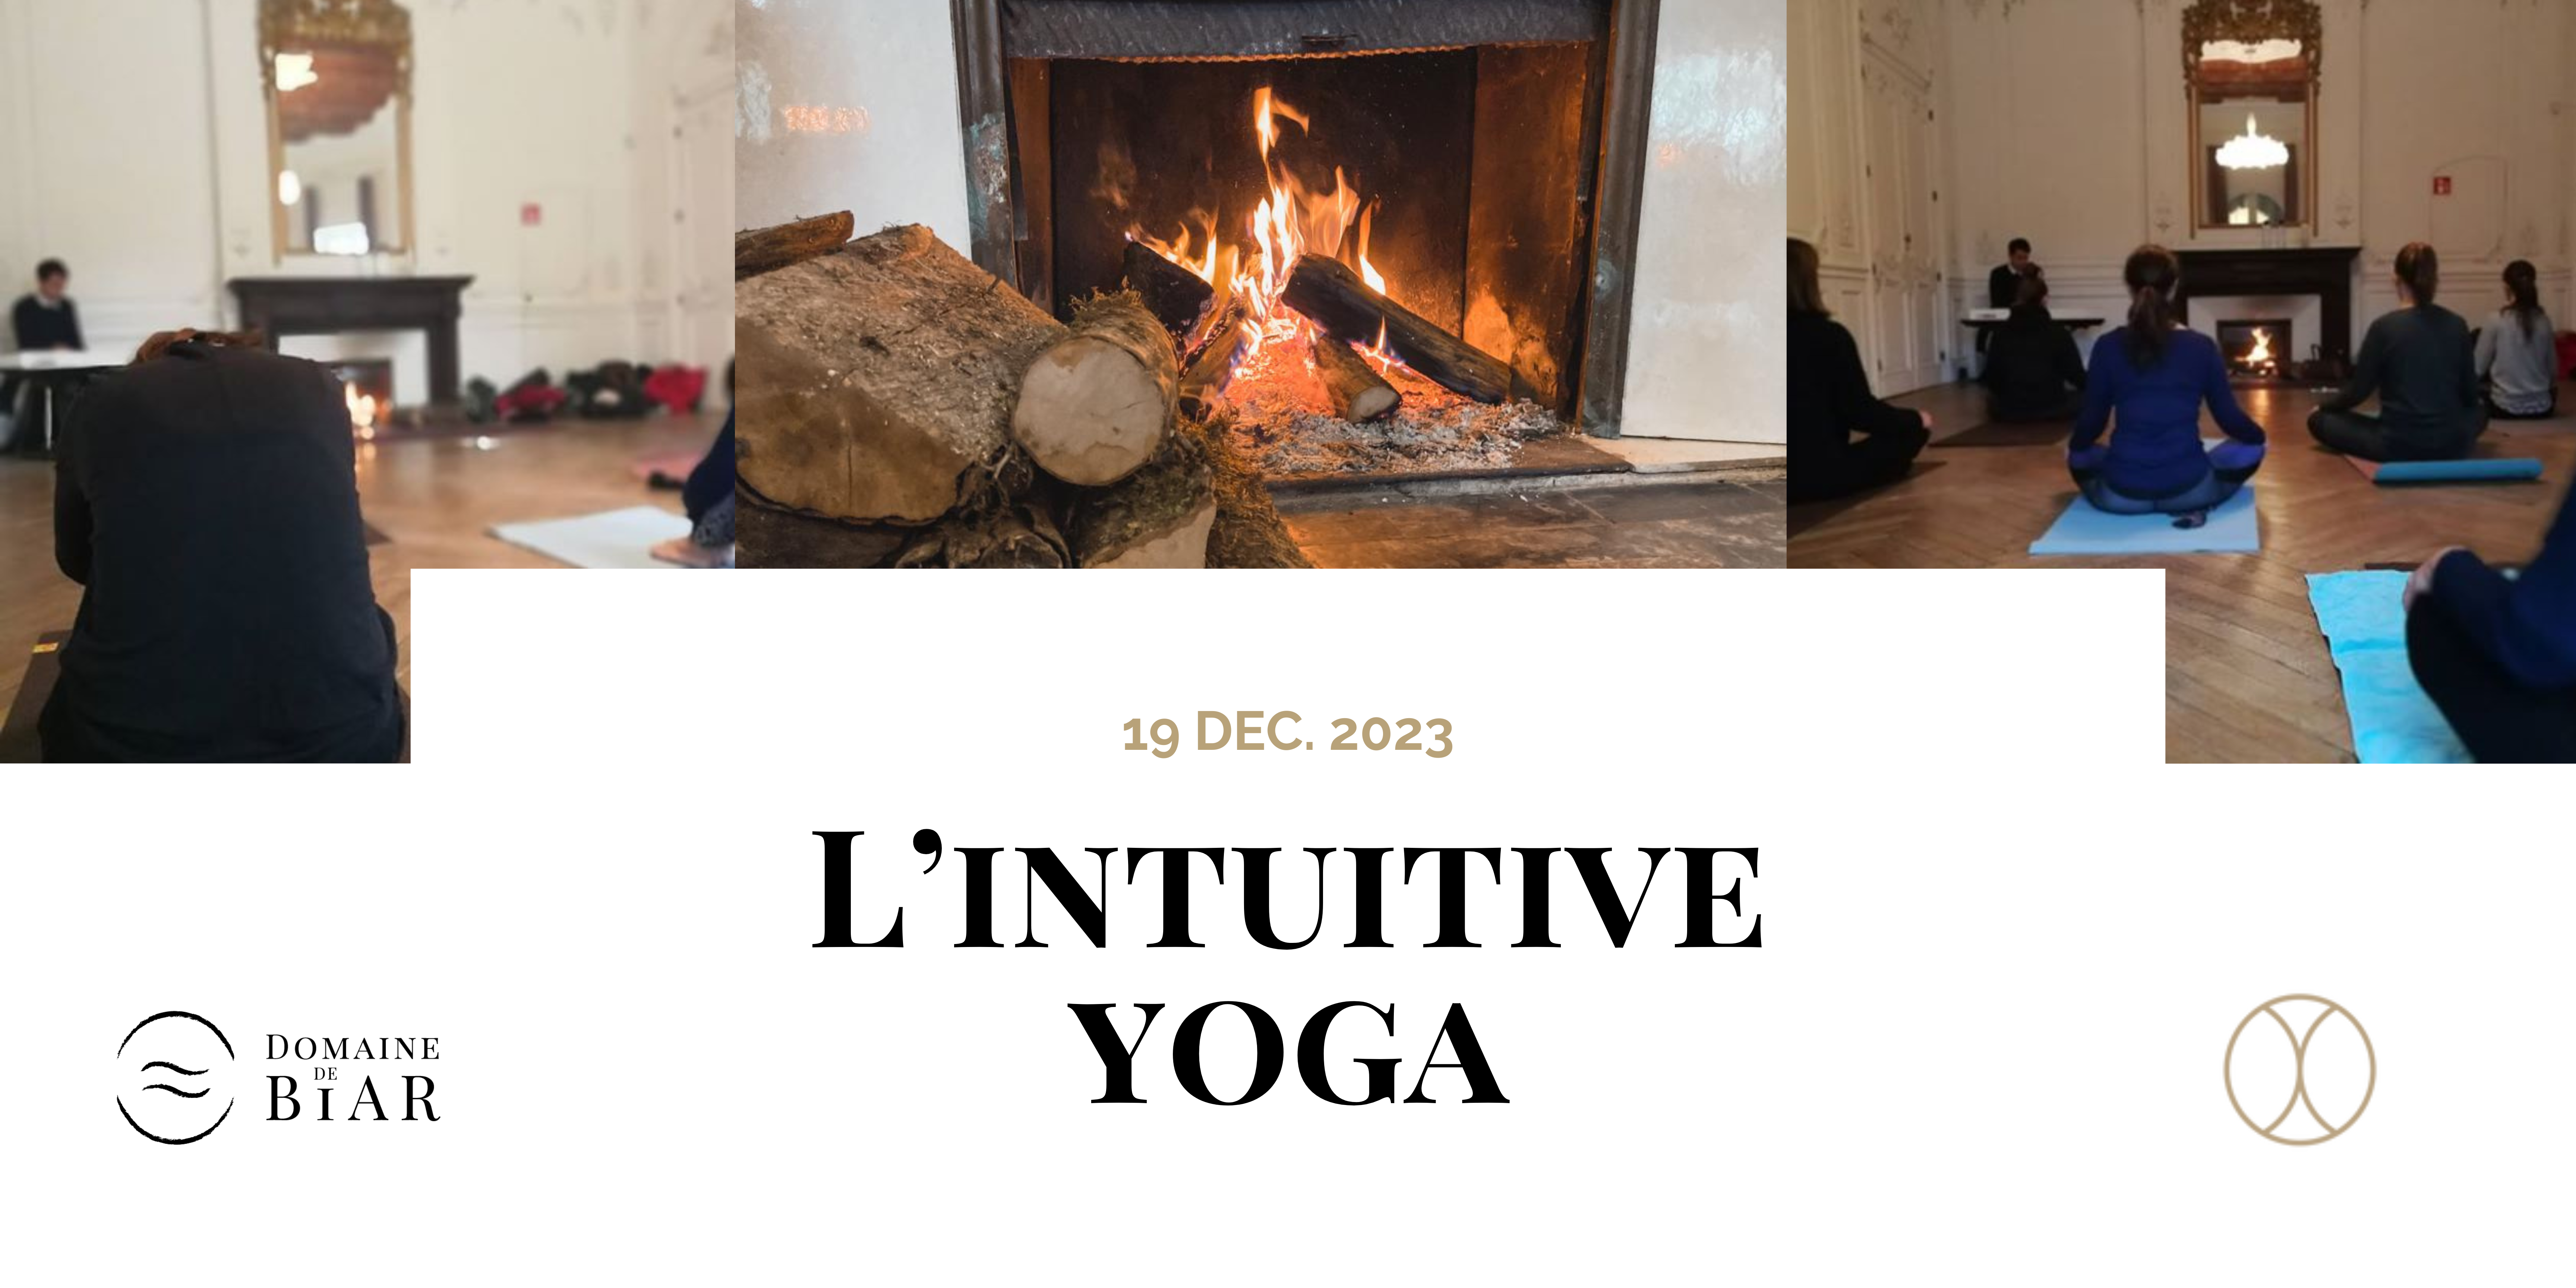 L’intuitive Yoga face à la cheminée